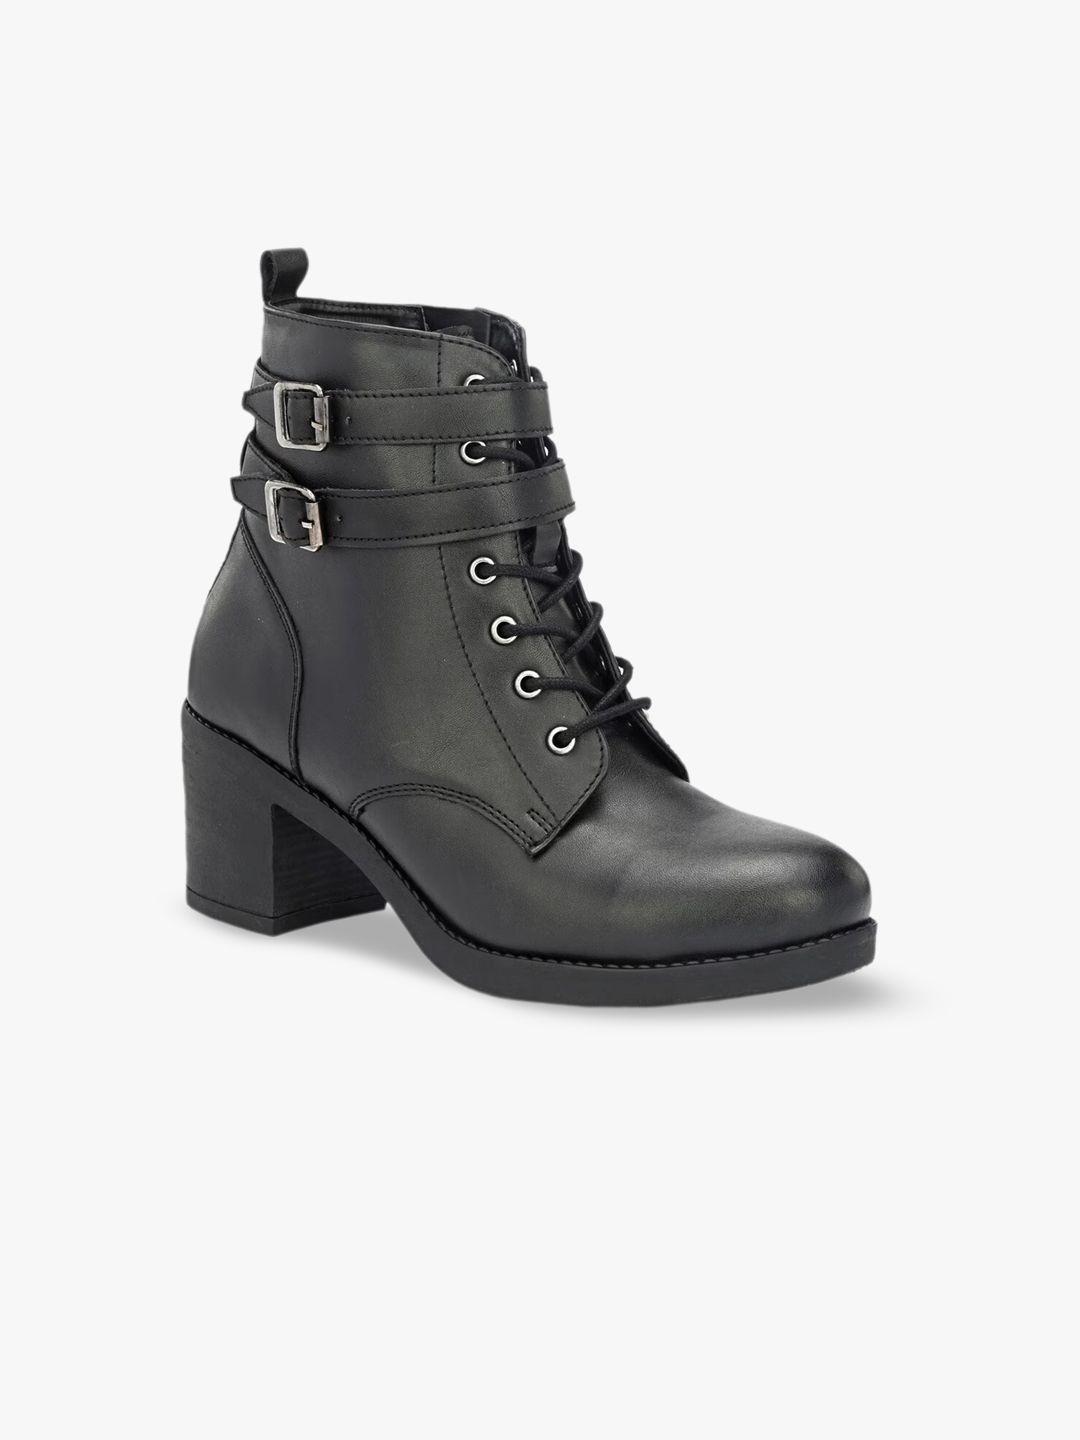 miseen women mid top block heel regular boots with dual strap detail